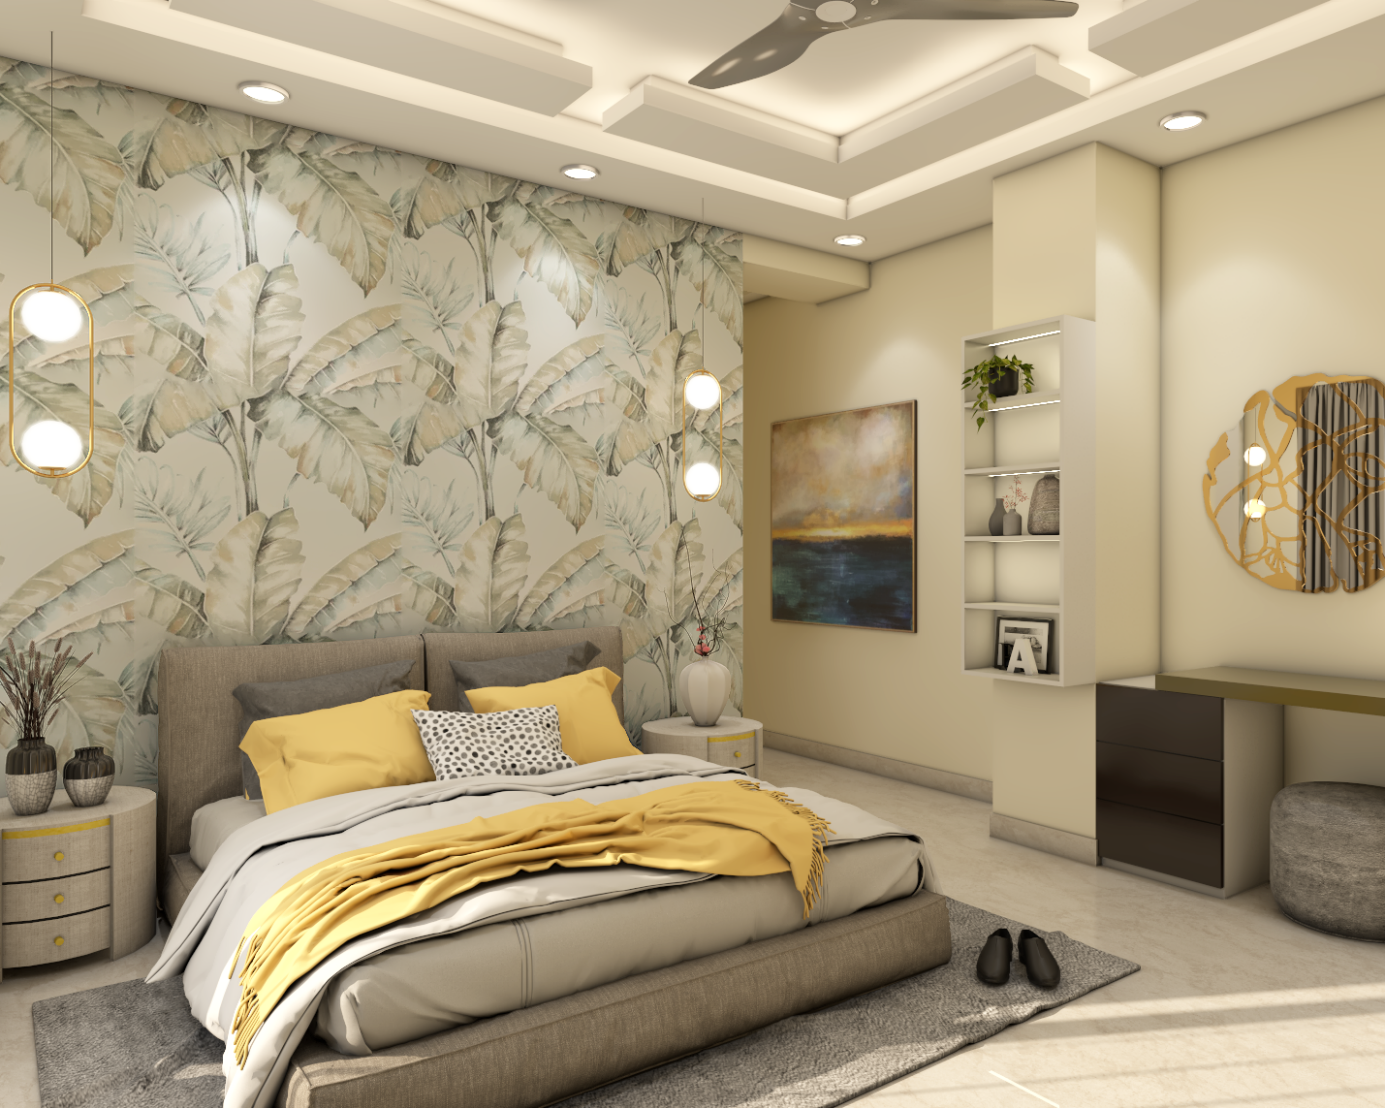  شیوه ترکیب کاغذ دیواری ساده و گلدار برای اتاق خواب: رنگ بندی